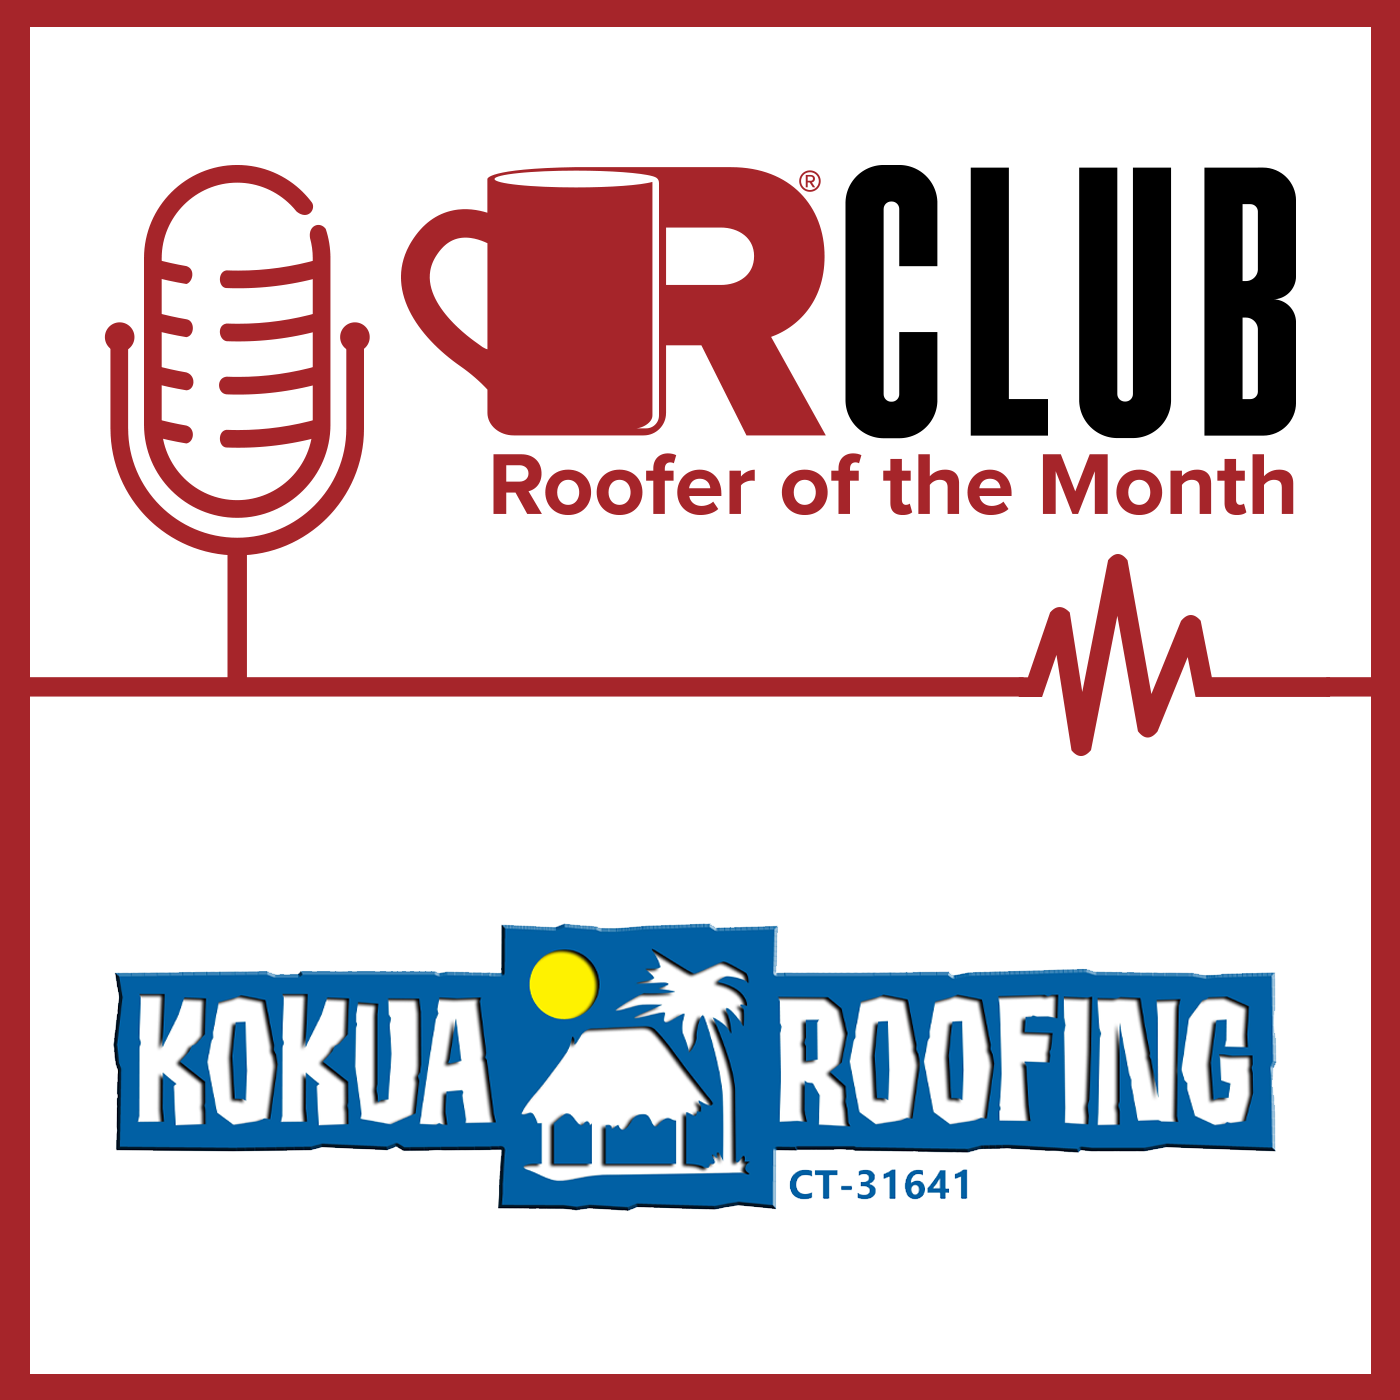 KoKua Roofing - ROTM - POD